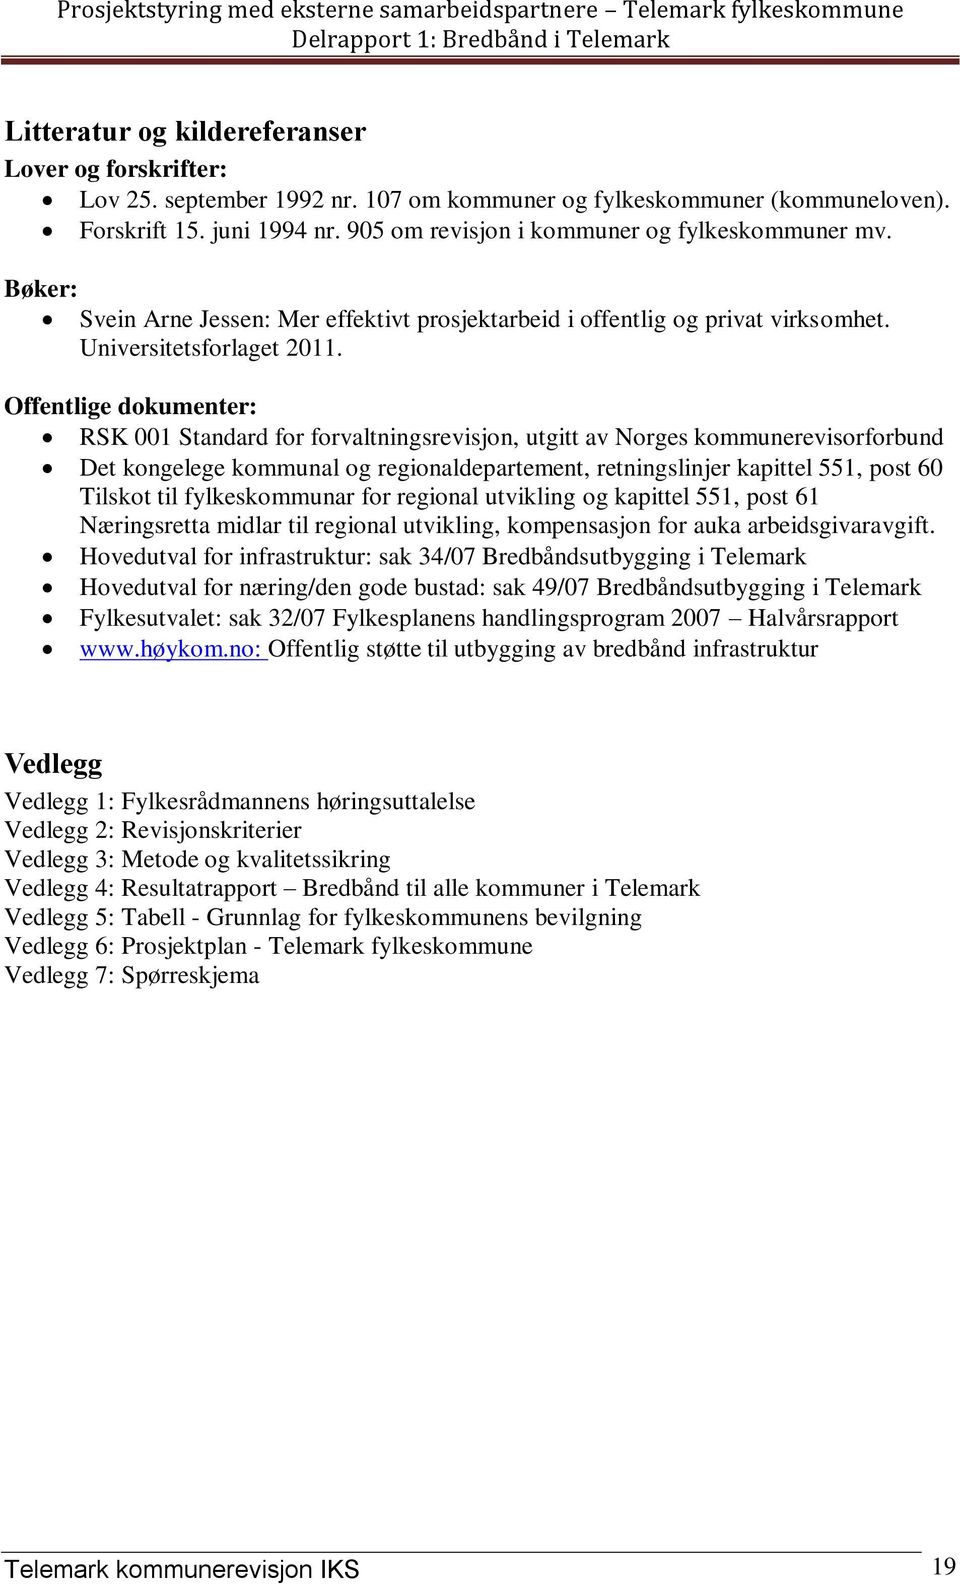 Offentlige dokumenter: RSK 001 Standard for forvaltningsrevisjon, utgitt av Norges kommunerevisorforbund Det kongelege kommunal og regionaldepartement, retningslinjer kapittel 551, post 60 Tilskot